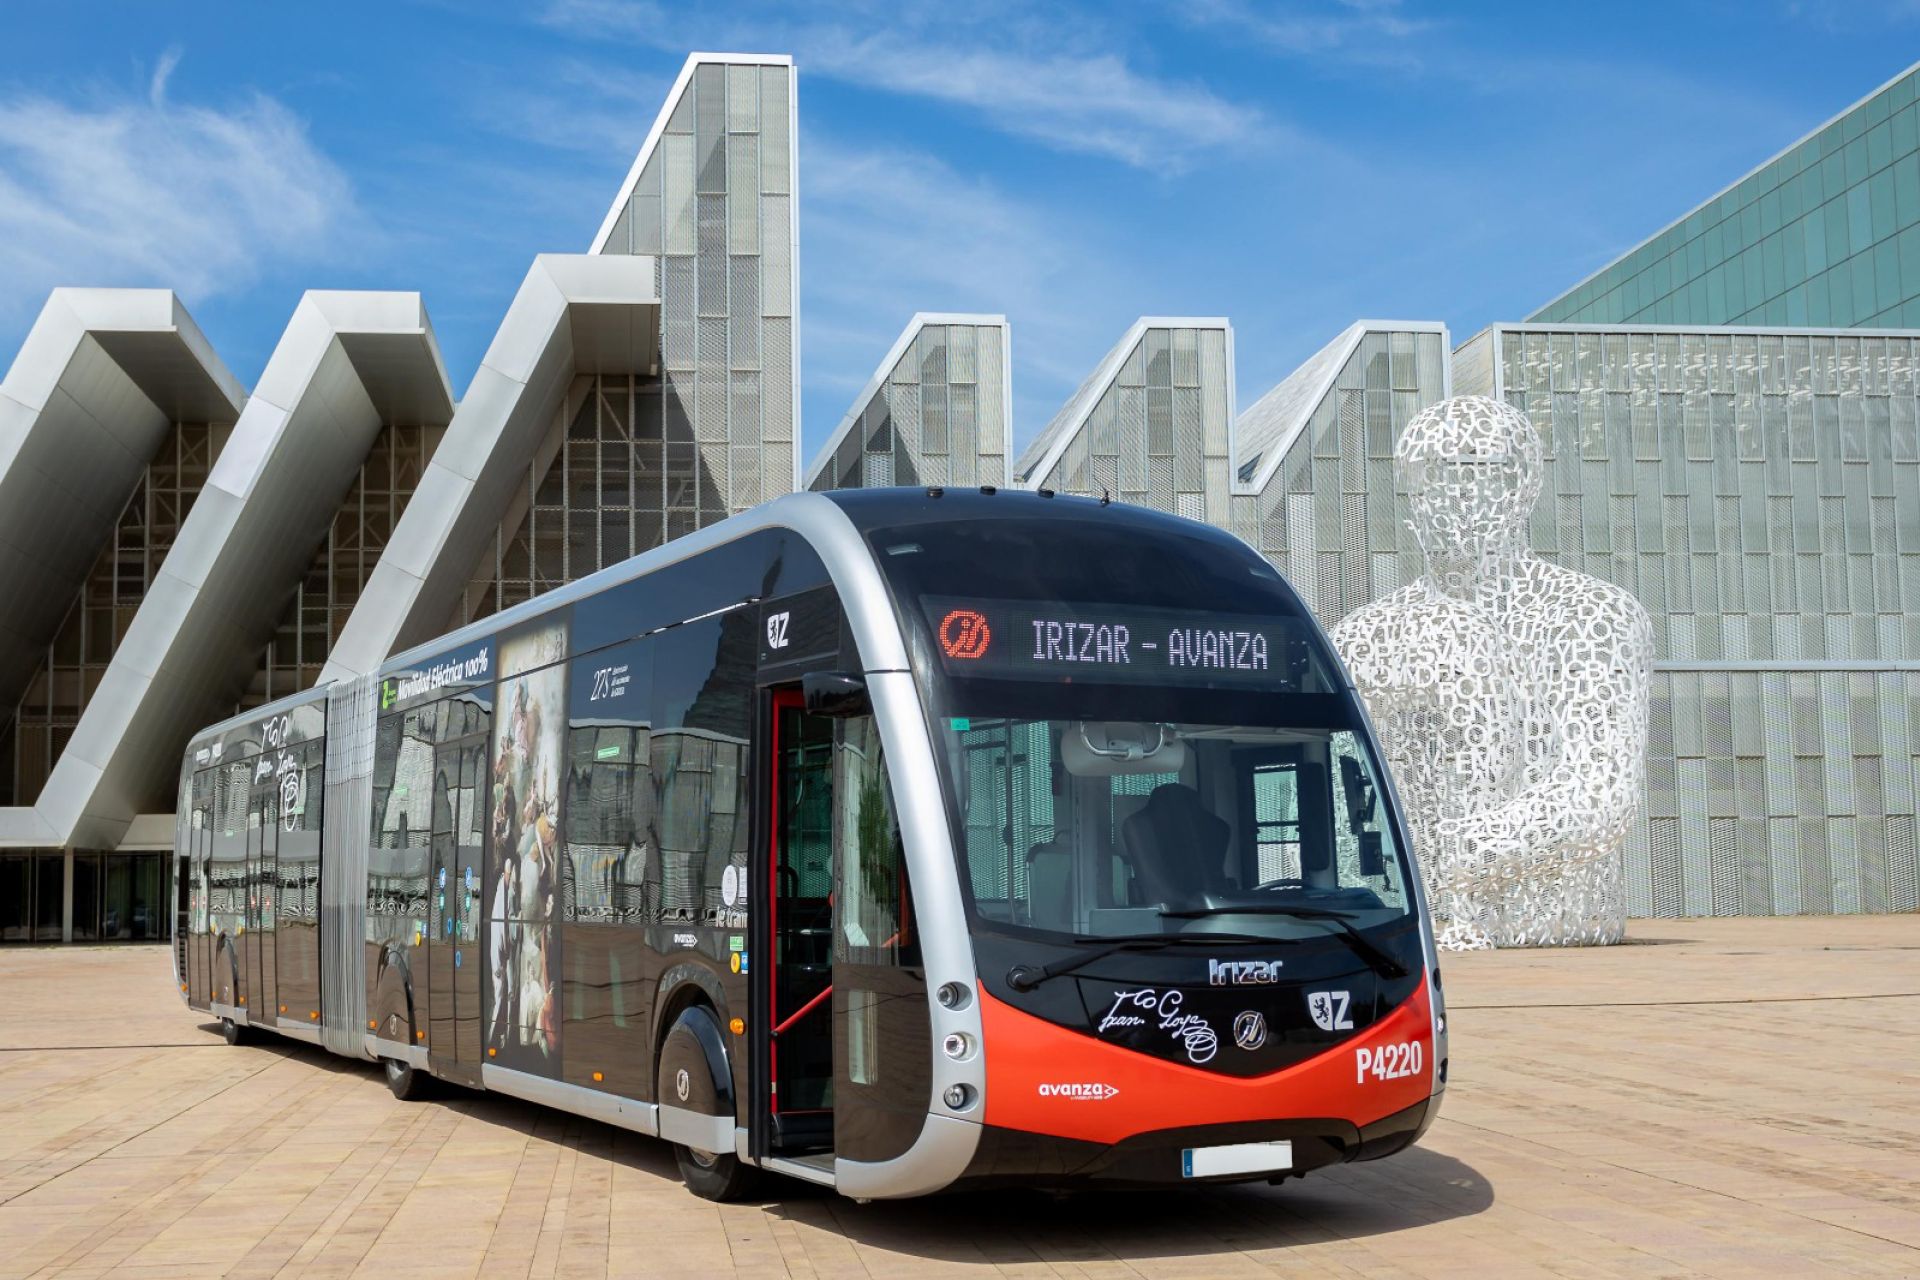 El Ayuntamiento de Zaragoza y Avanza apuestan por autobuses eléctricos de Irizar e-mobility para la renovación de su flota